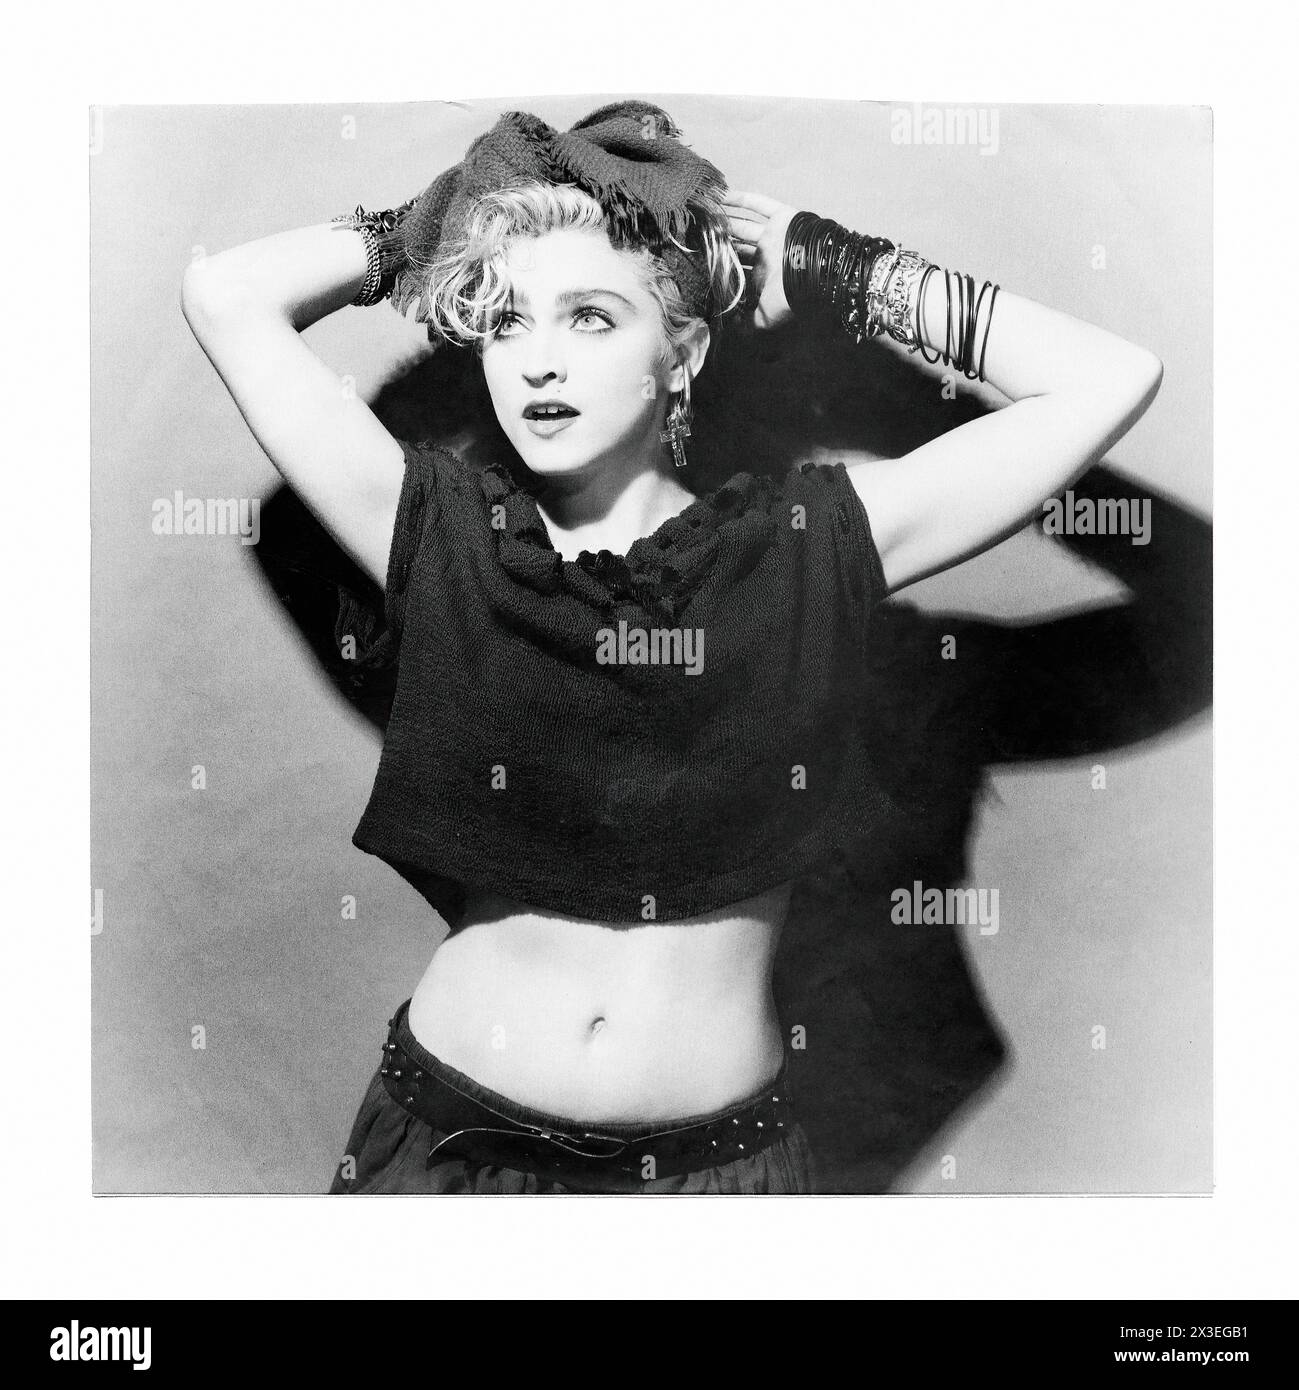 Madonna - - photo promotionnelle du label de musique vintage - photographe inconnu, pour usage éditorial uniquement Banque D'Images